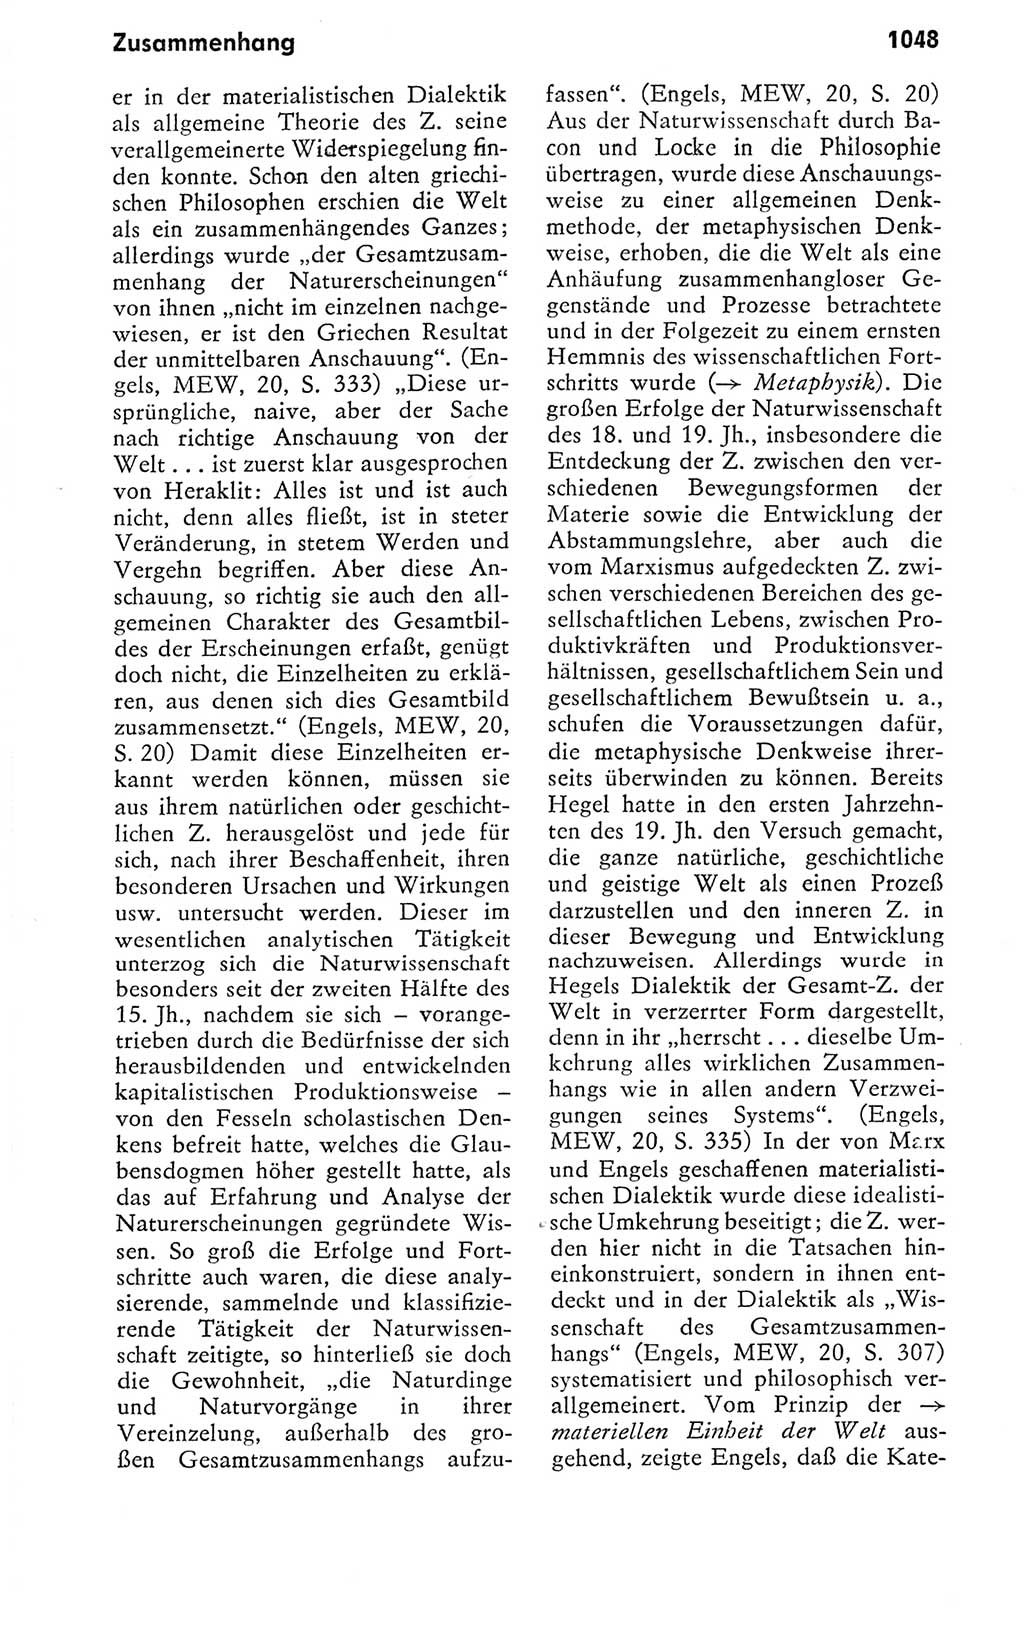 Kleines politisches Wörterbuch [Deutsche Demokratische Republik (DDR)] 1978, Seite 1048 (Kl. pol. Wb. DDR 1978, S. 1048)